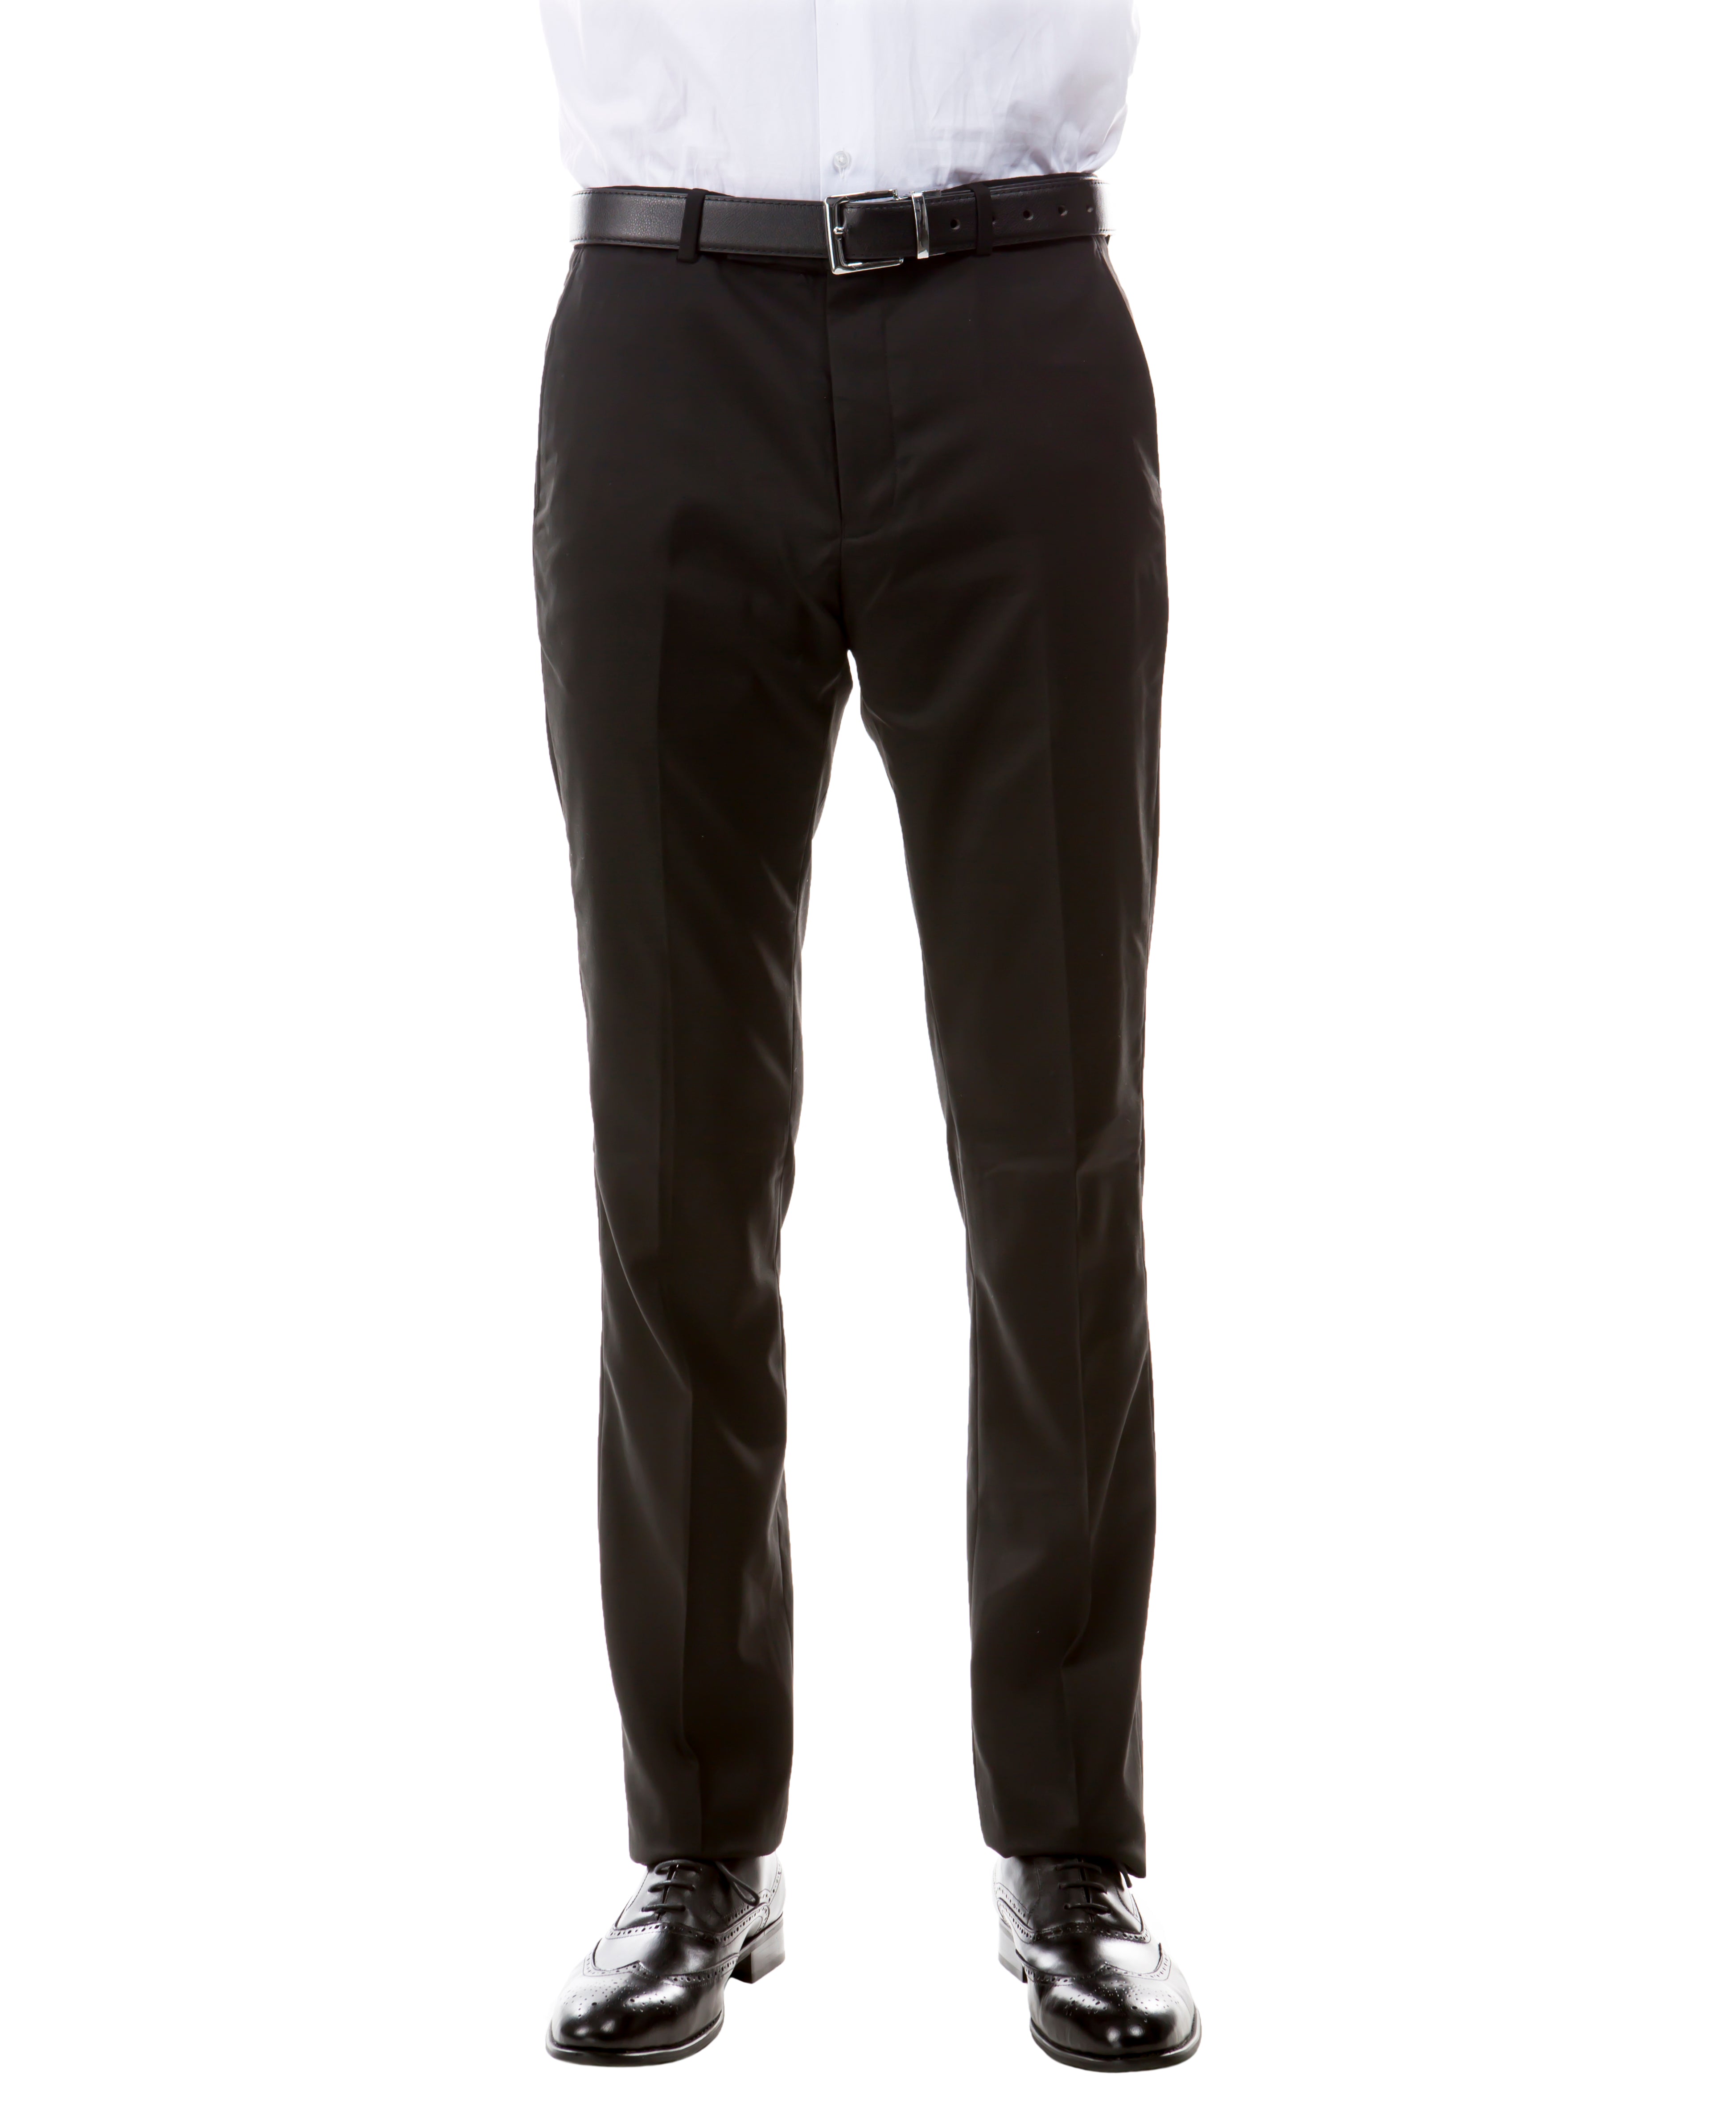 Zegarie Suit Separates Black Solid Men's Dress Pants